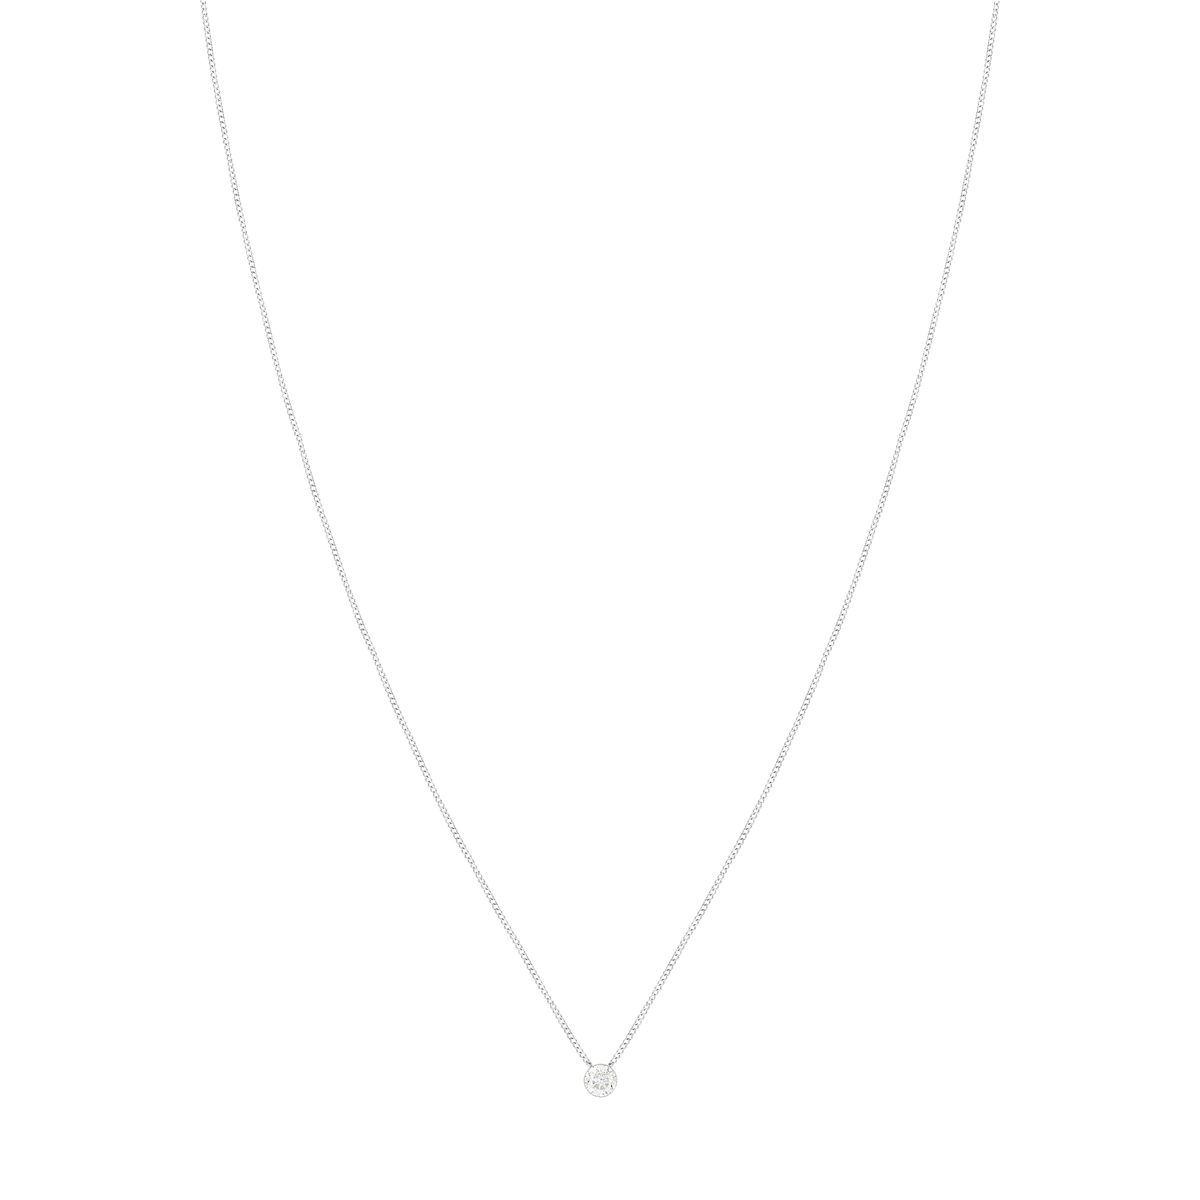 Collier or 375 blanc diamant 45 cm